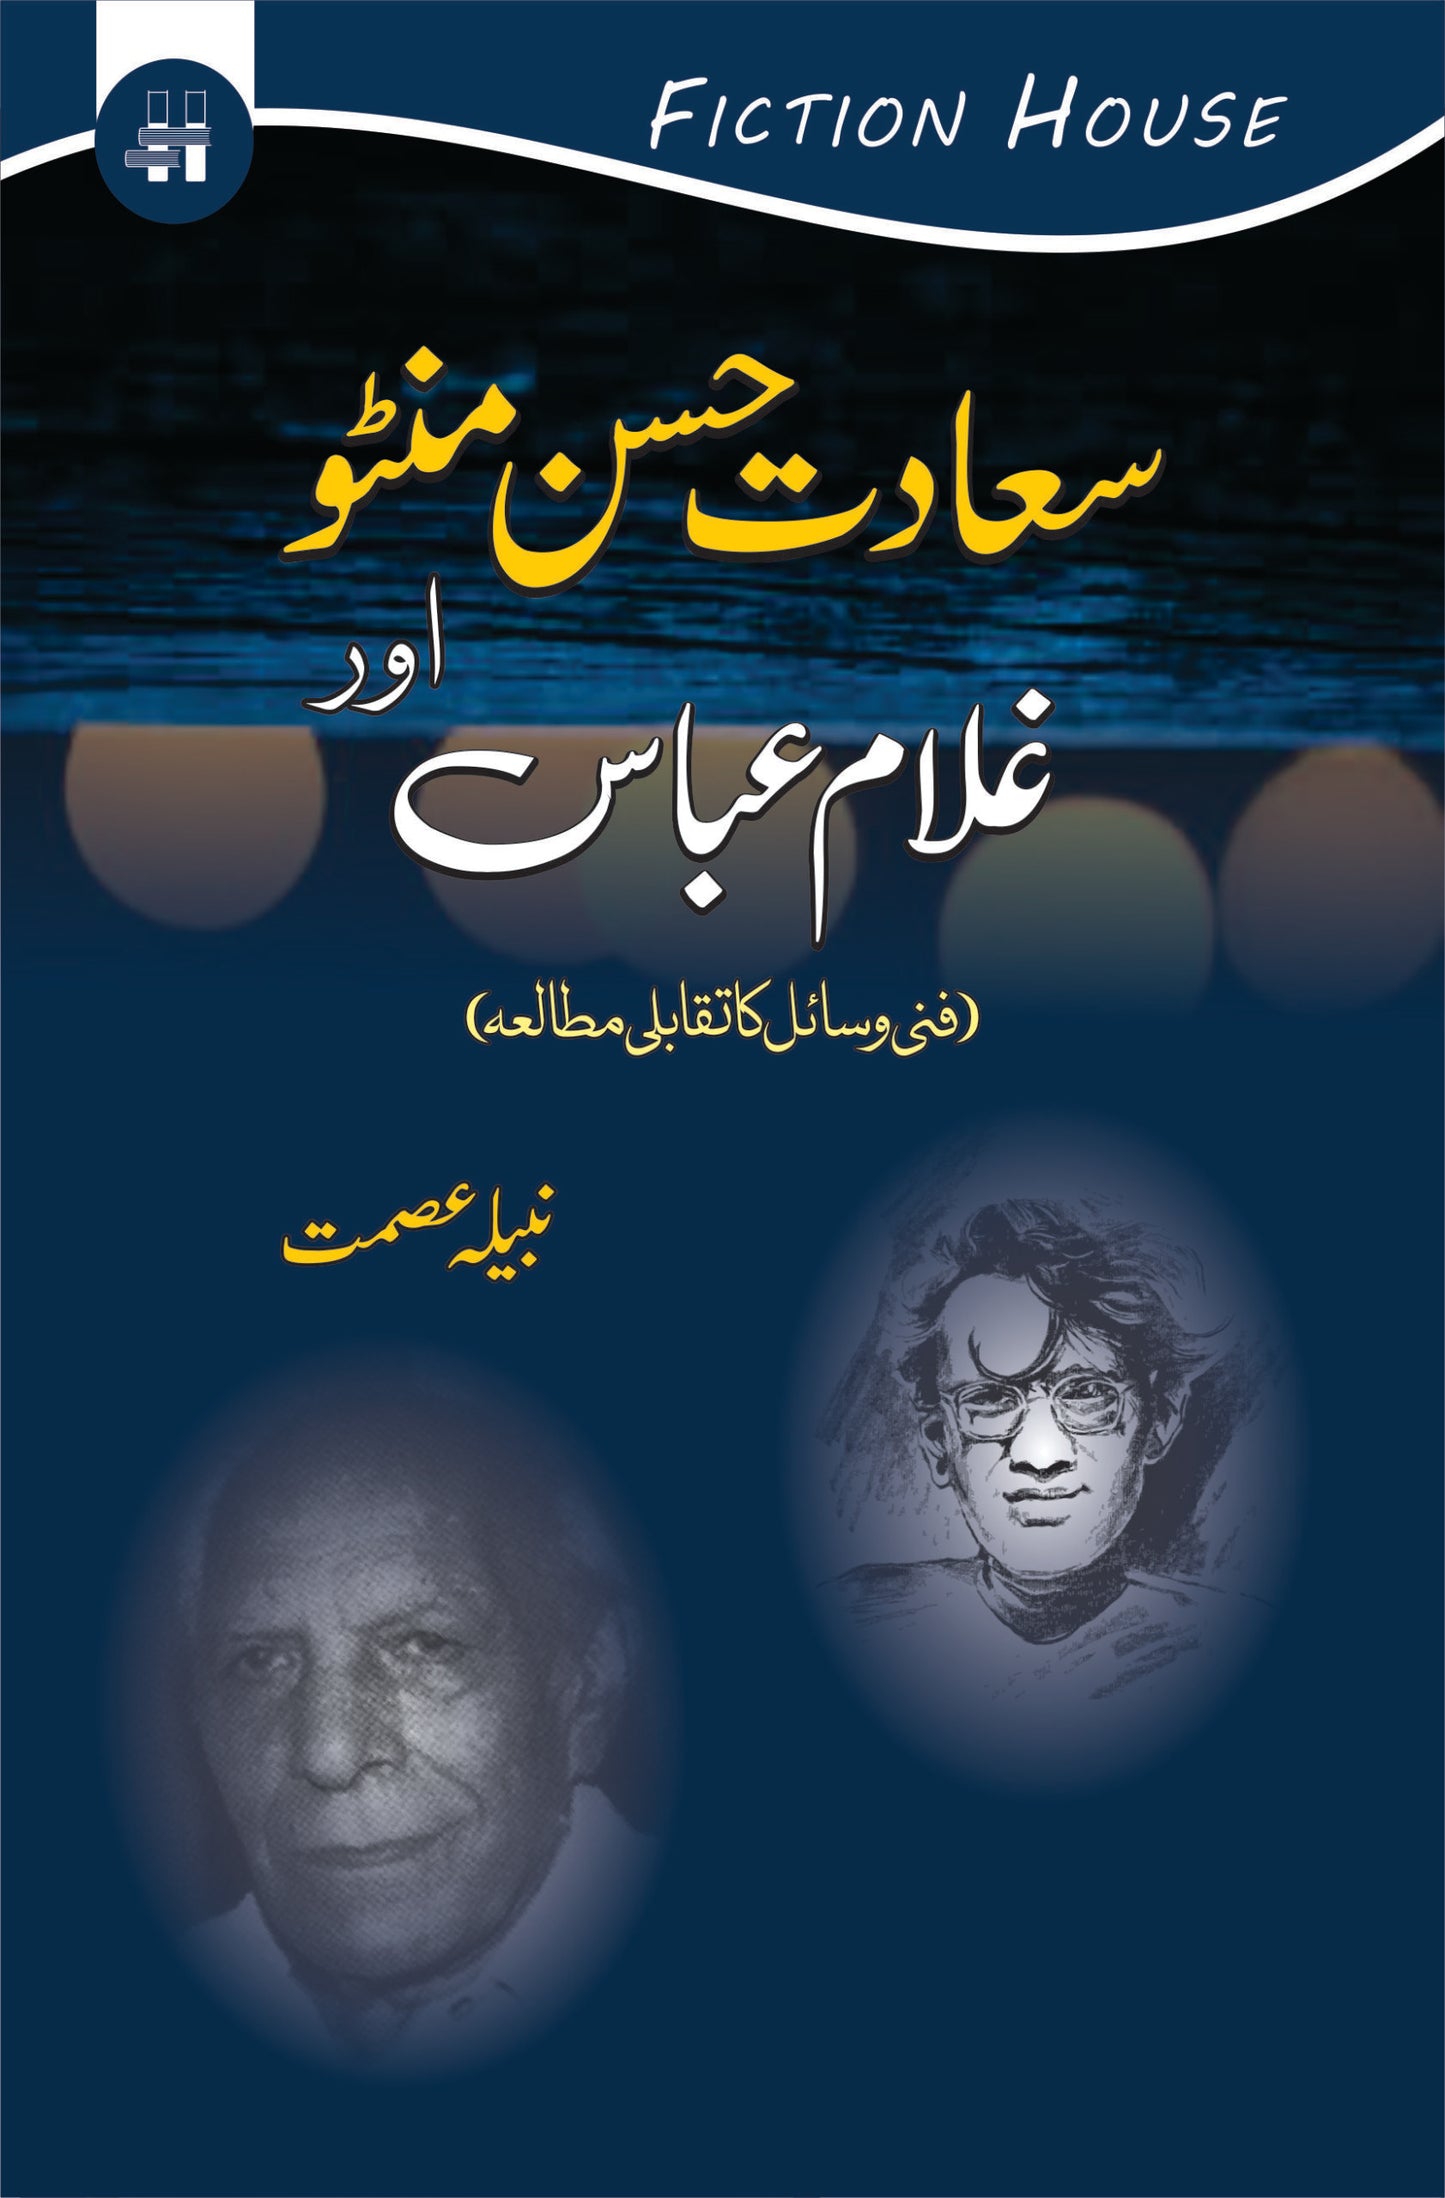 سعادت حسن منٹو اور غلام عباس | Saadat Husan Munto Or Gulam Abbas Fiction House